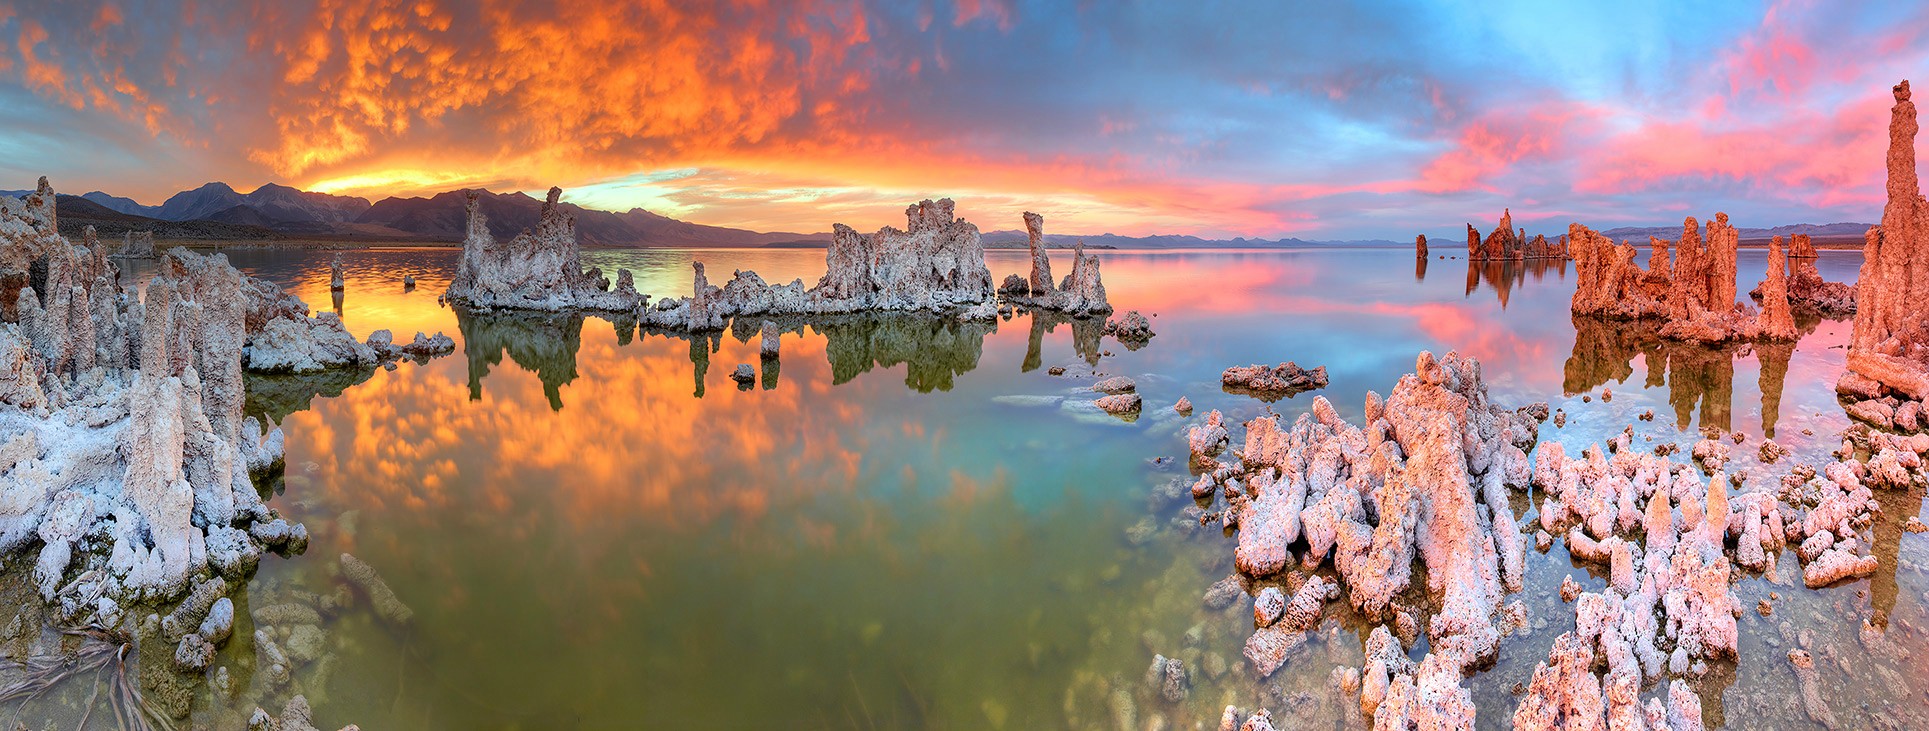 Озеро моно, Калифорния, США